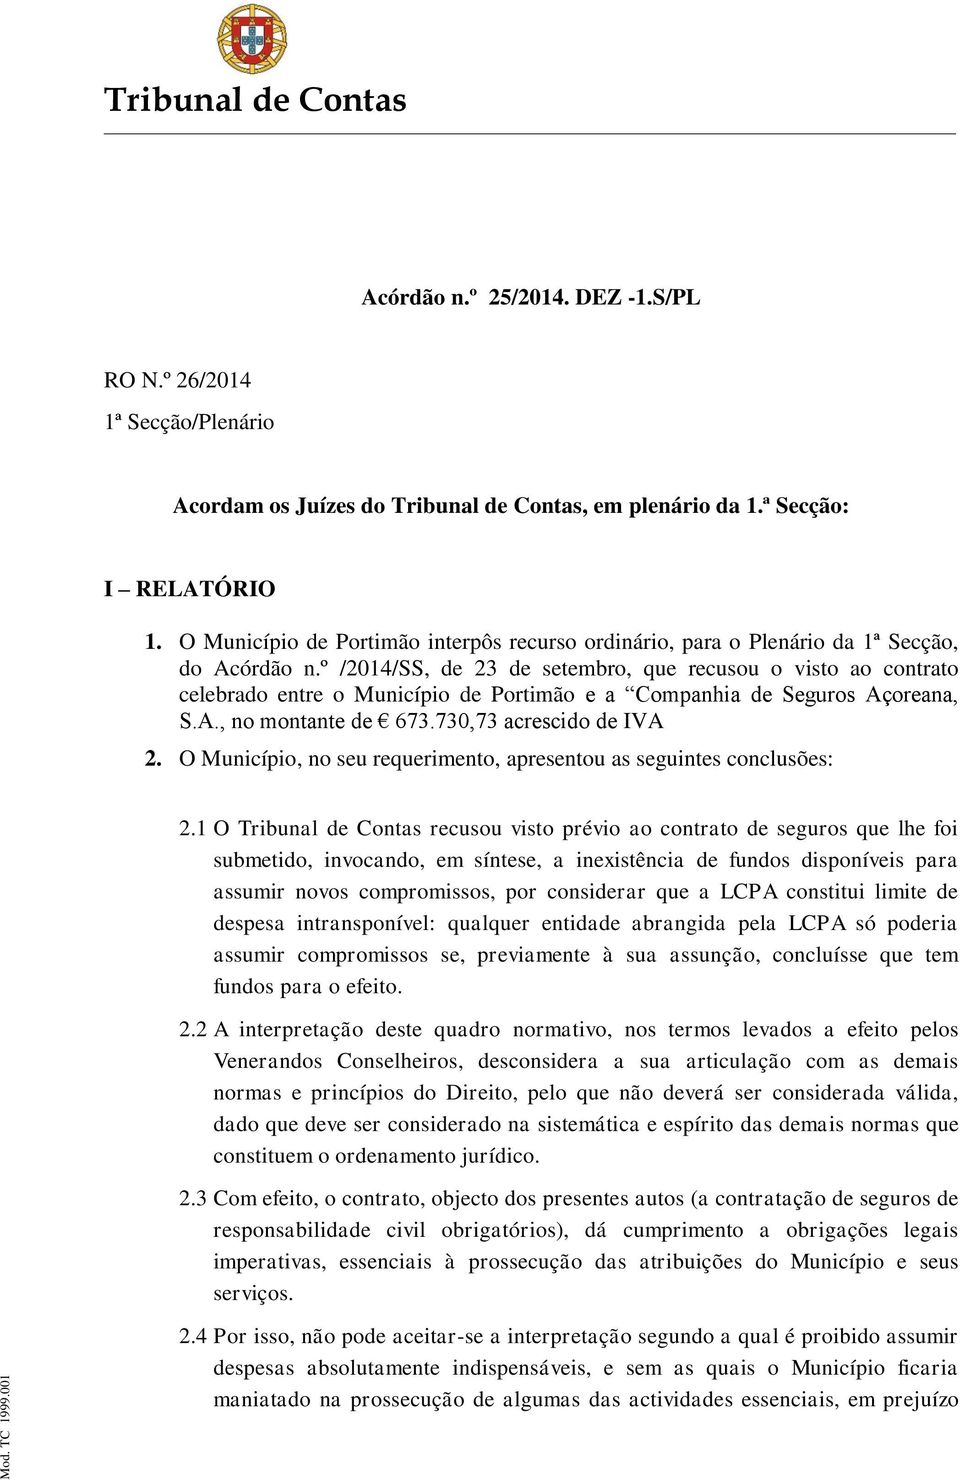 º /2014/SS, de 23 de setembro, que recusou o visto ao contrato celebrado entre o Município de Portimão e a Companhia de Seguros Açoreana, S.A., no montante de 673.730,73 acrescido de IVA 2.